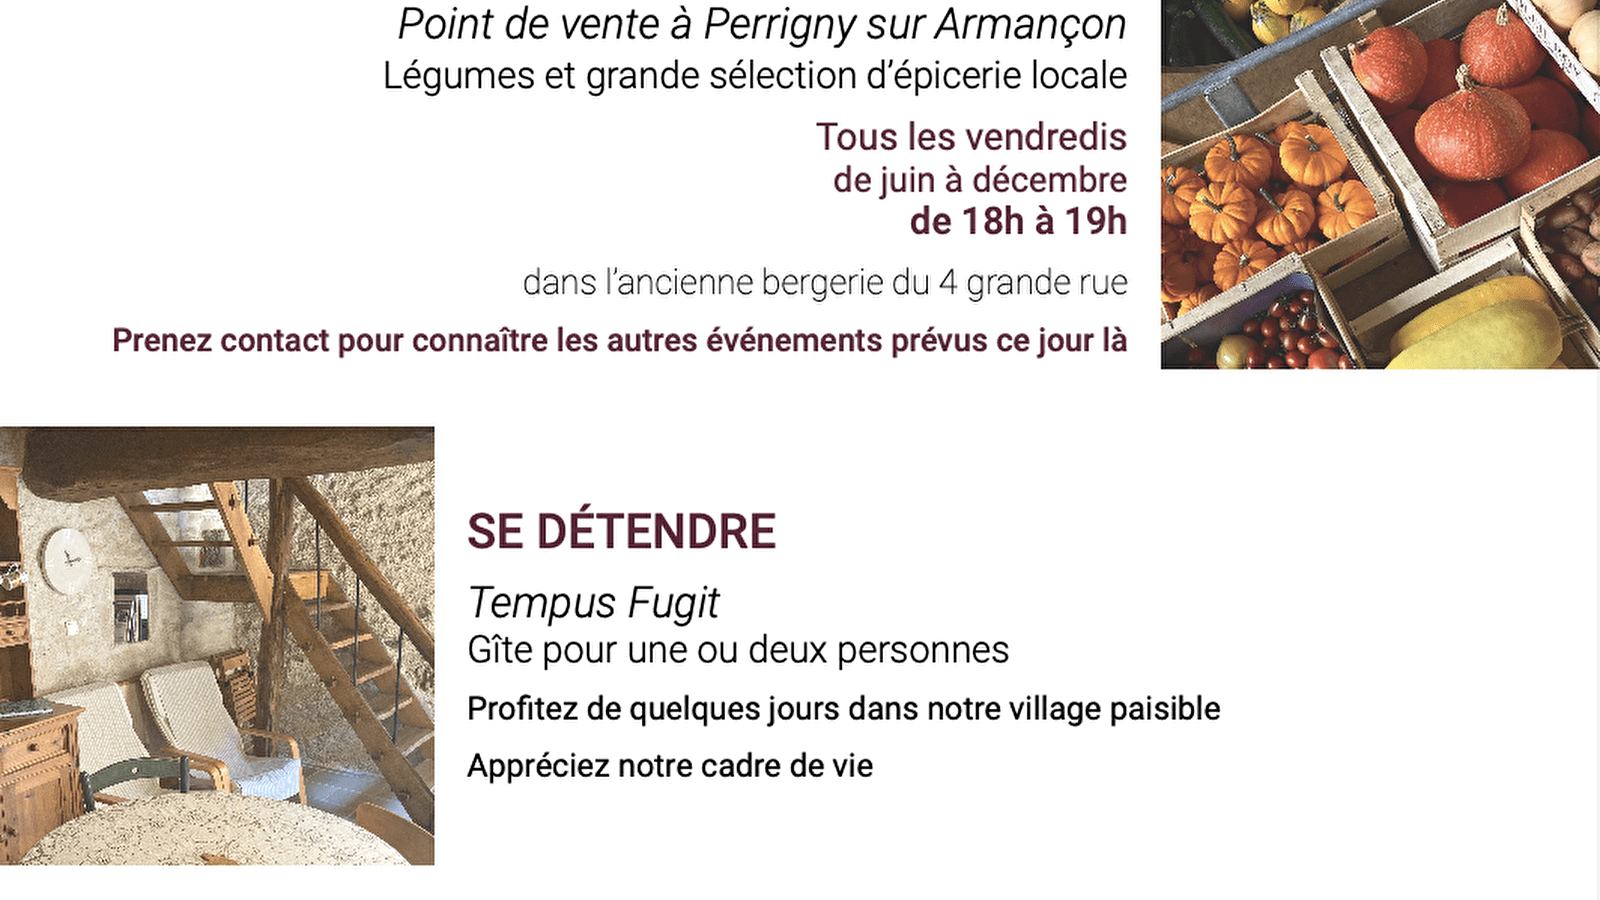 Point de vente légumes et épicerie locale 'Terre d'Isis' - Perrigny-sur-Armançon